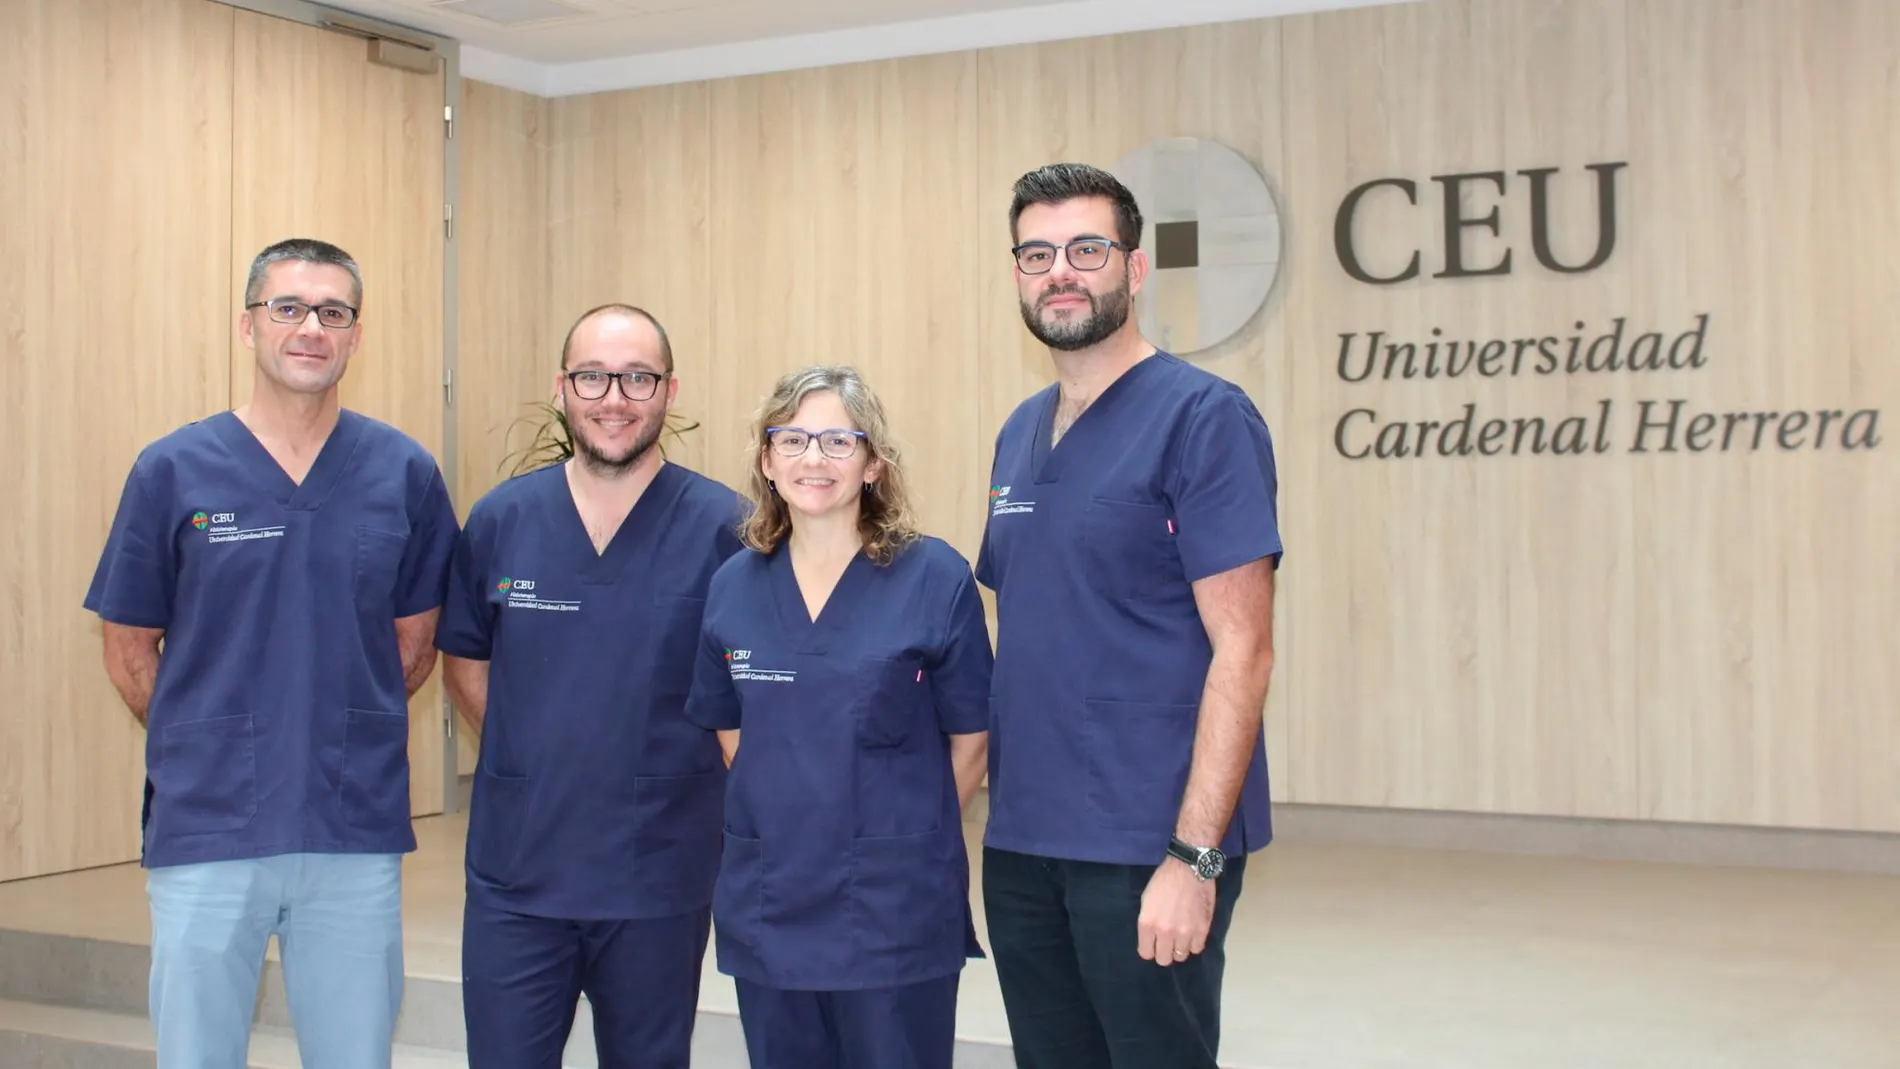 Los profesores de la CEU UCH Javier Martínez Gramage, José Martínez Olmos, Eva Segura y Juan José Amer, miembros del equipo investigador.